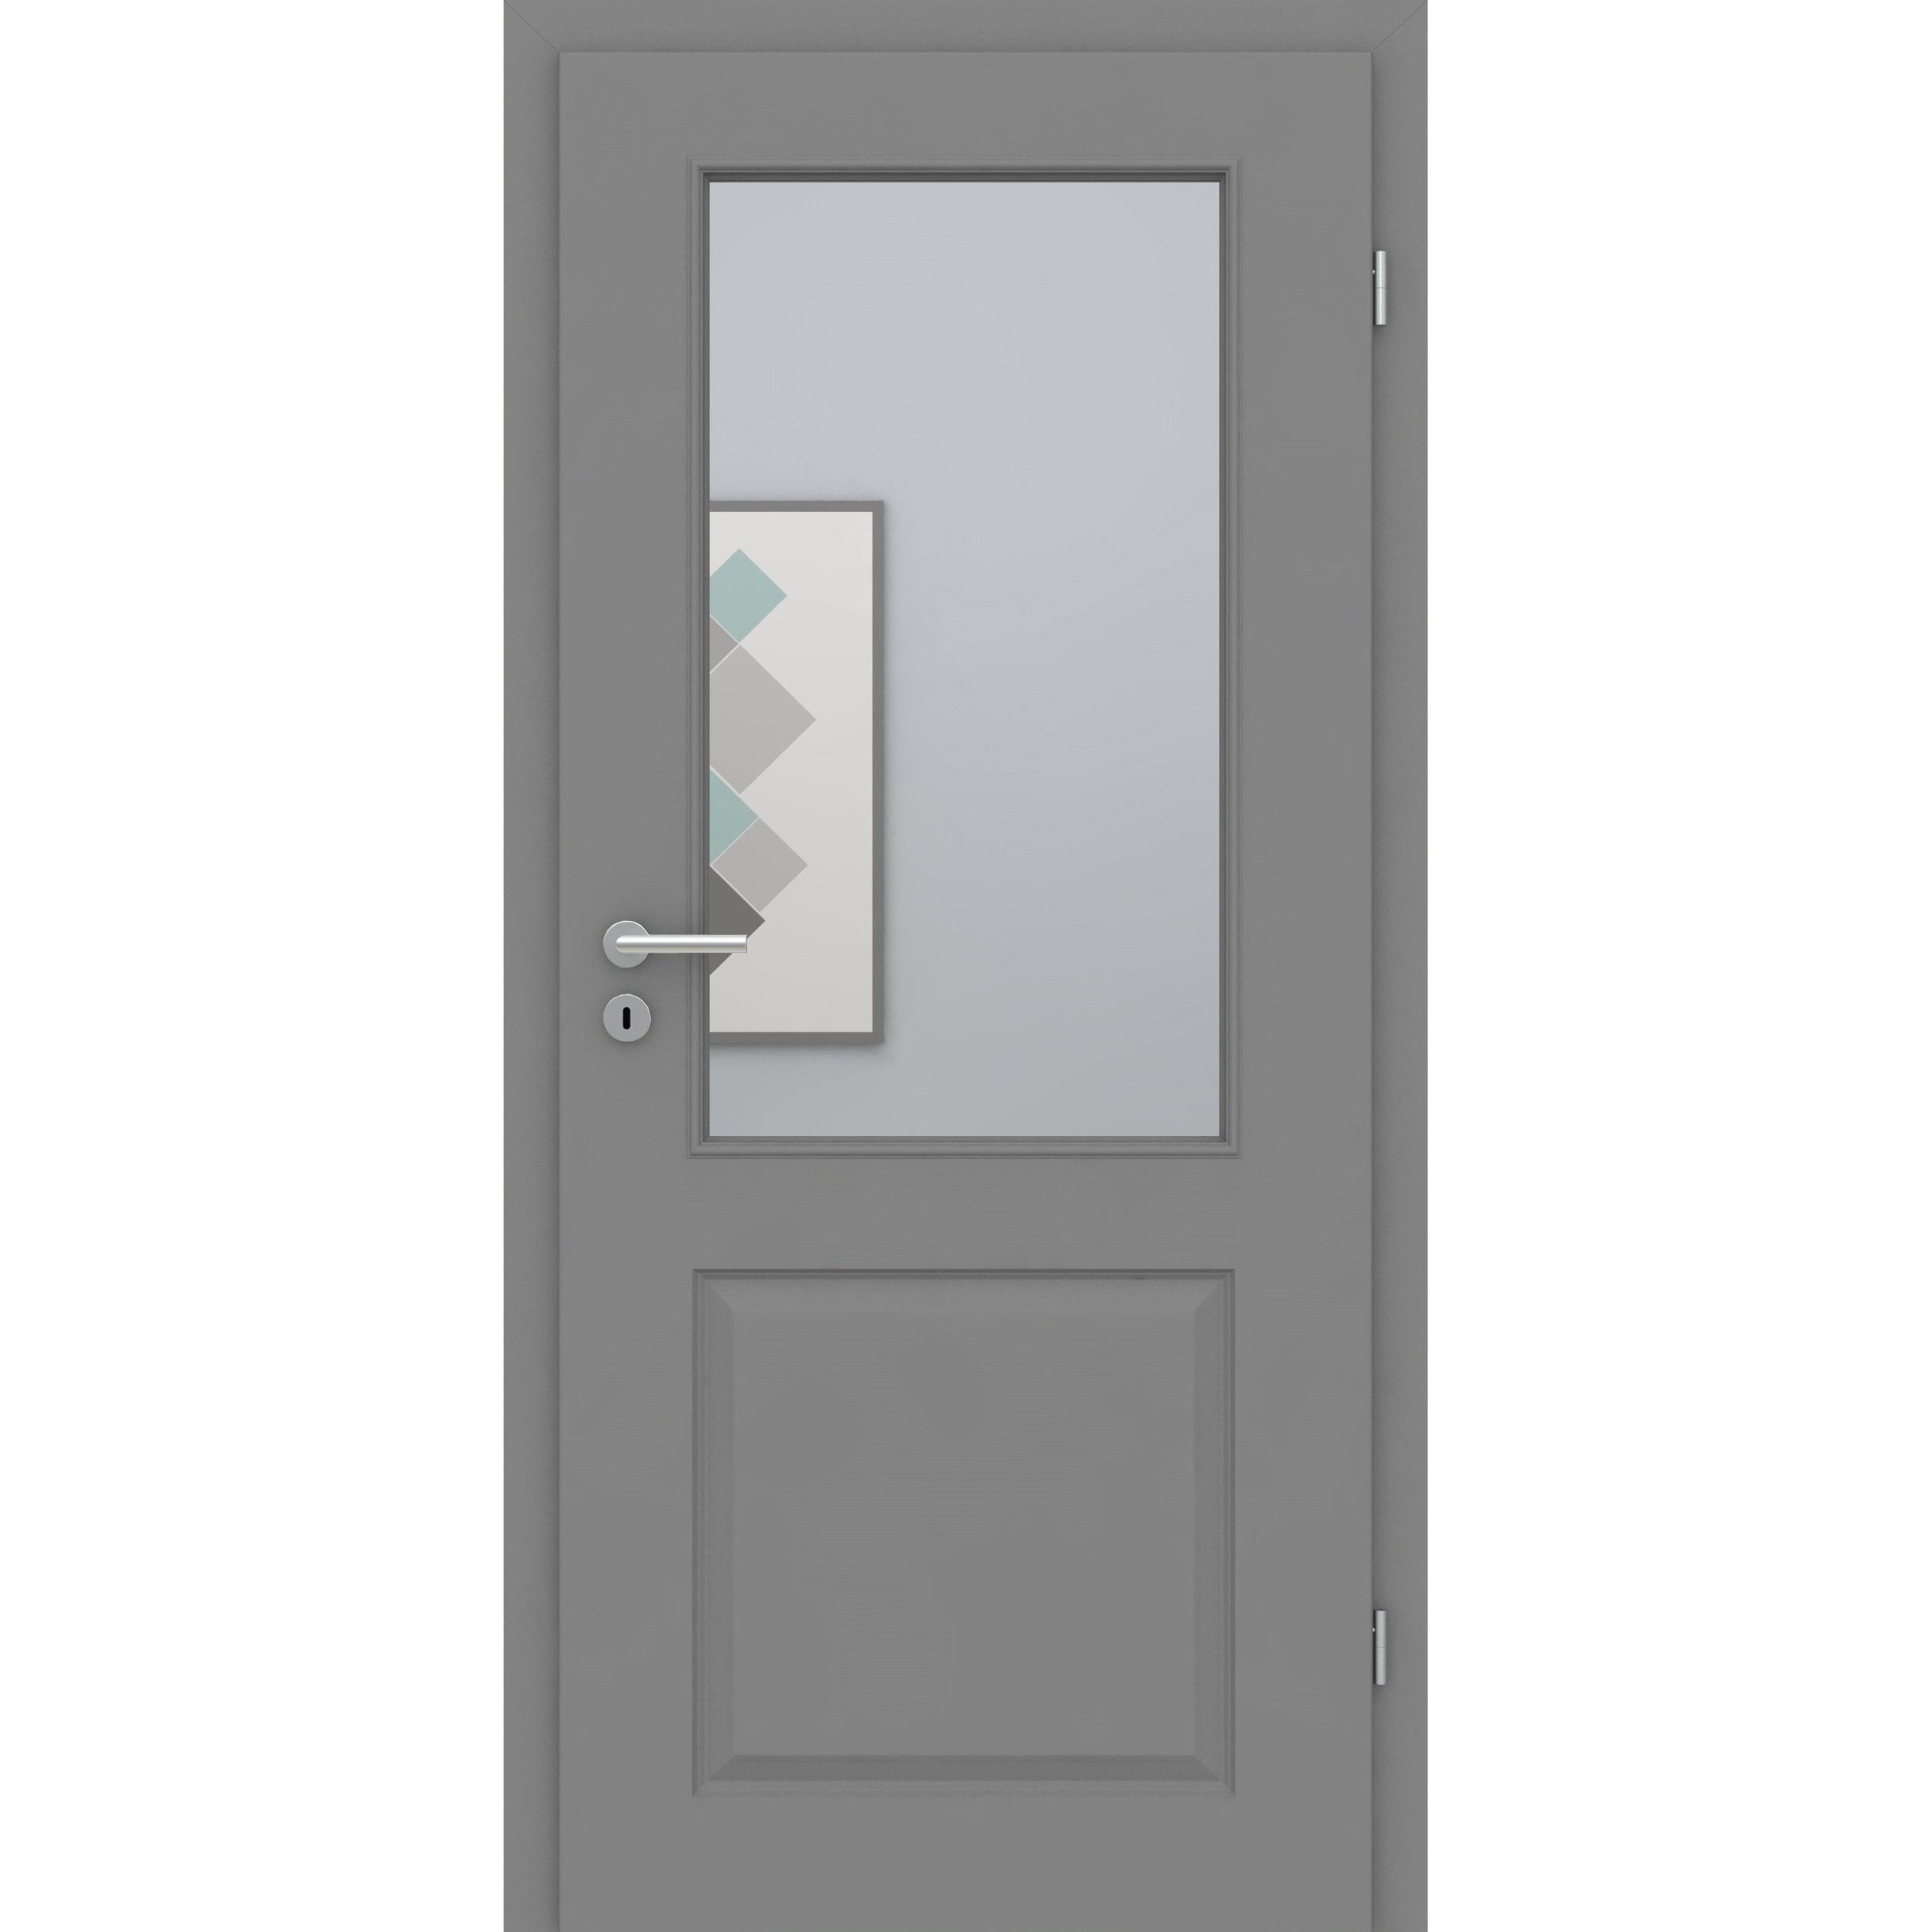 Zimmertür mit Lichtausschnitt grau 2 Kassetten Designkante - Modell Stiltür K27LA